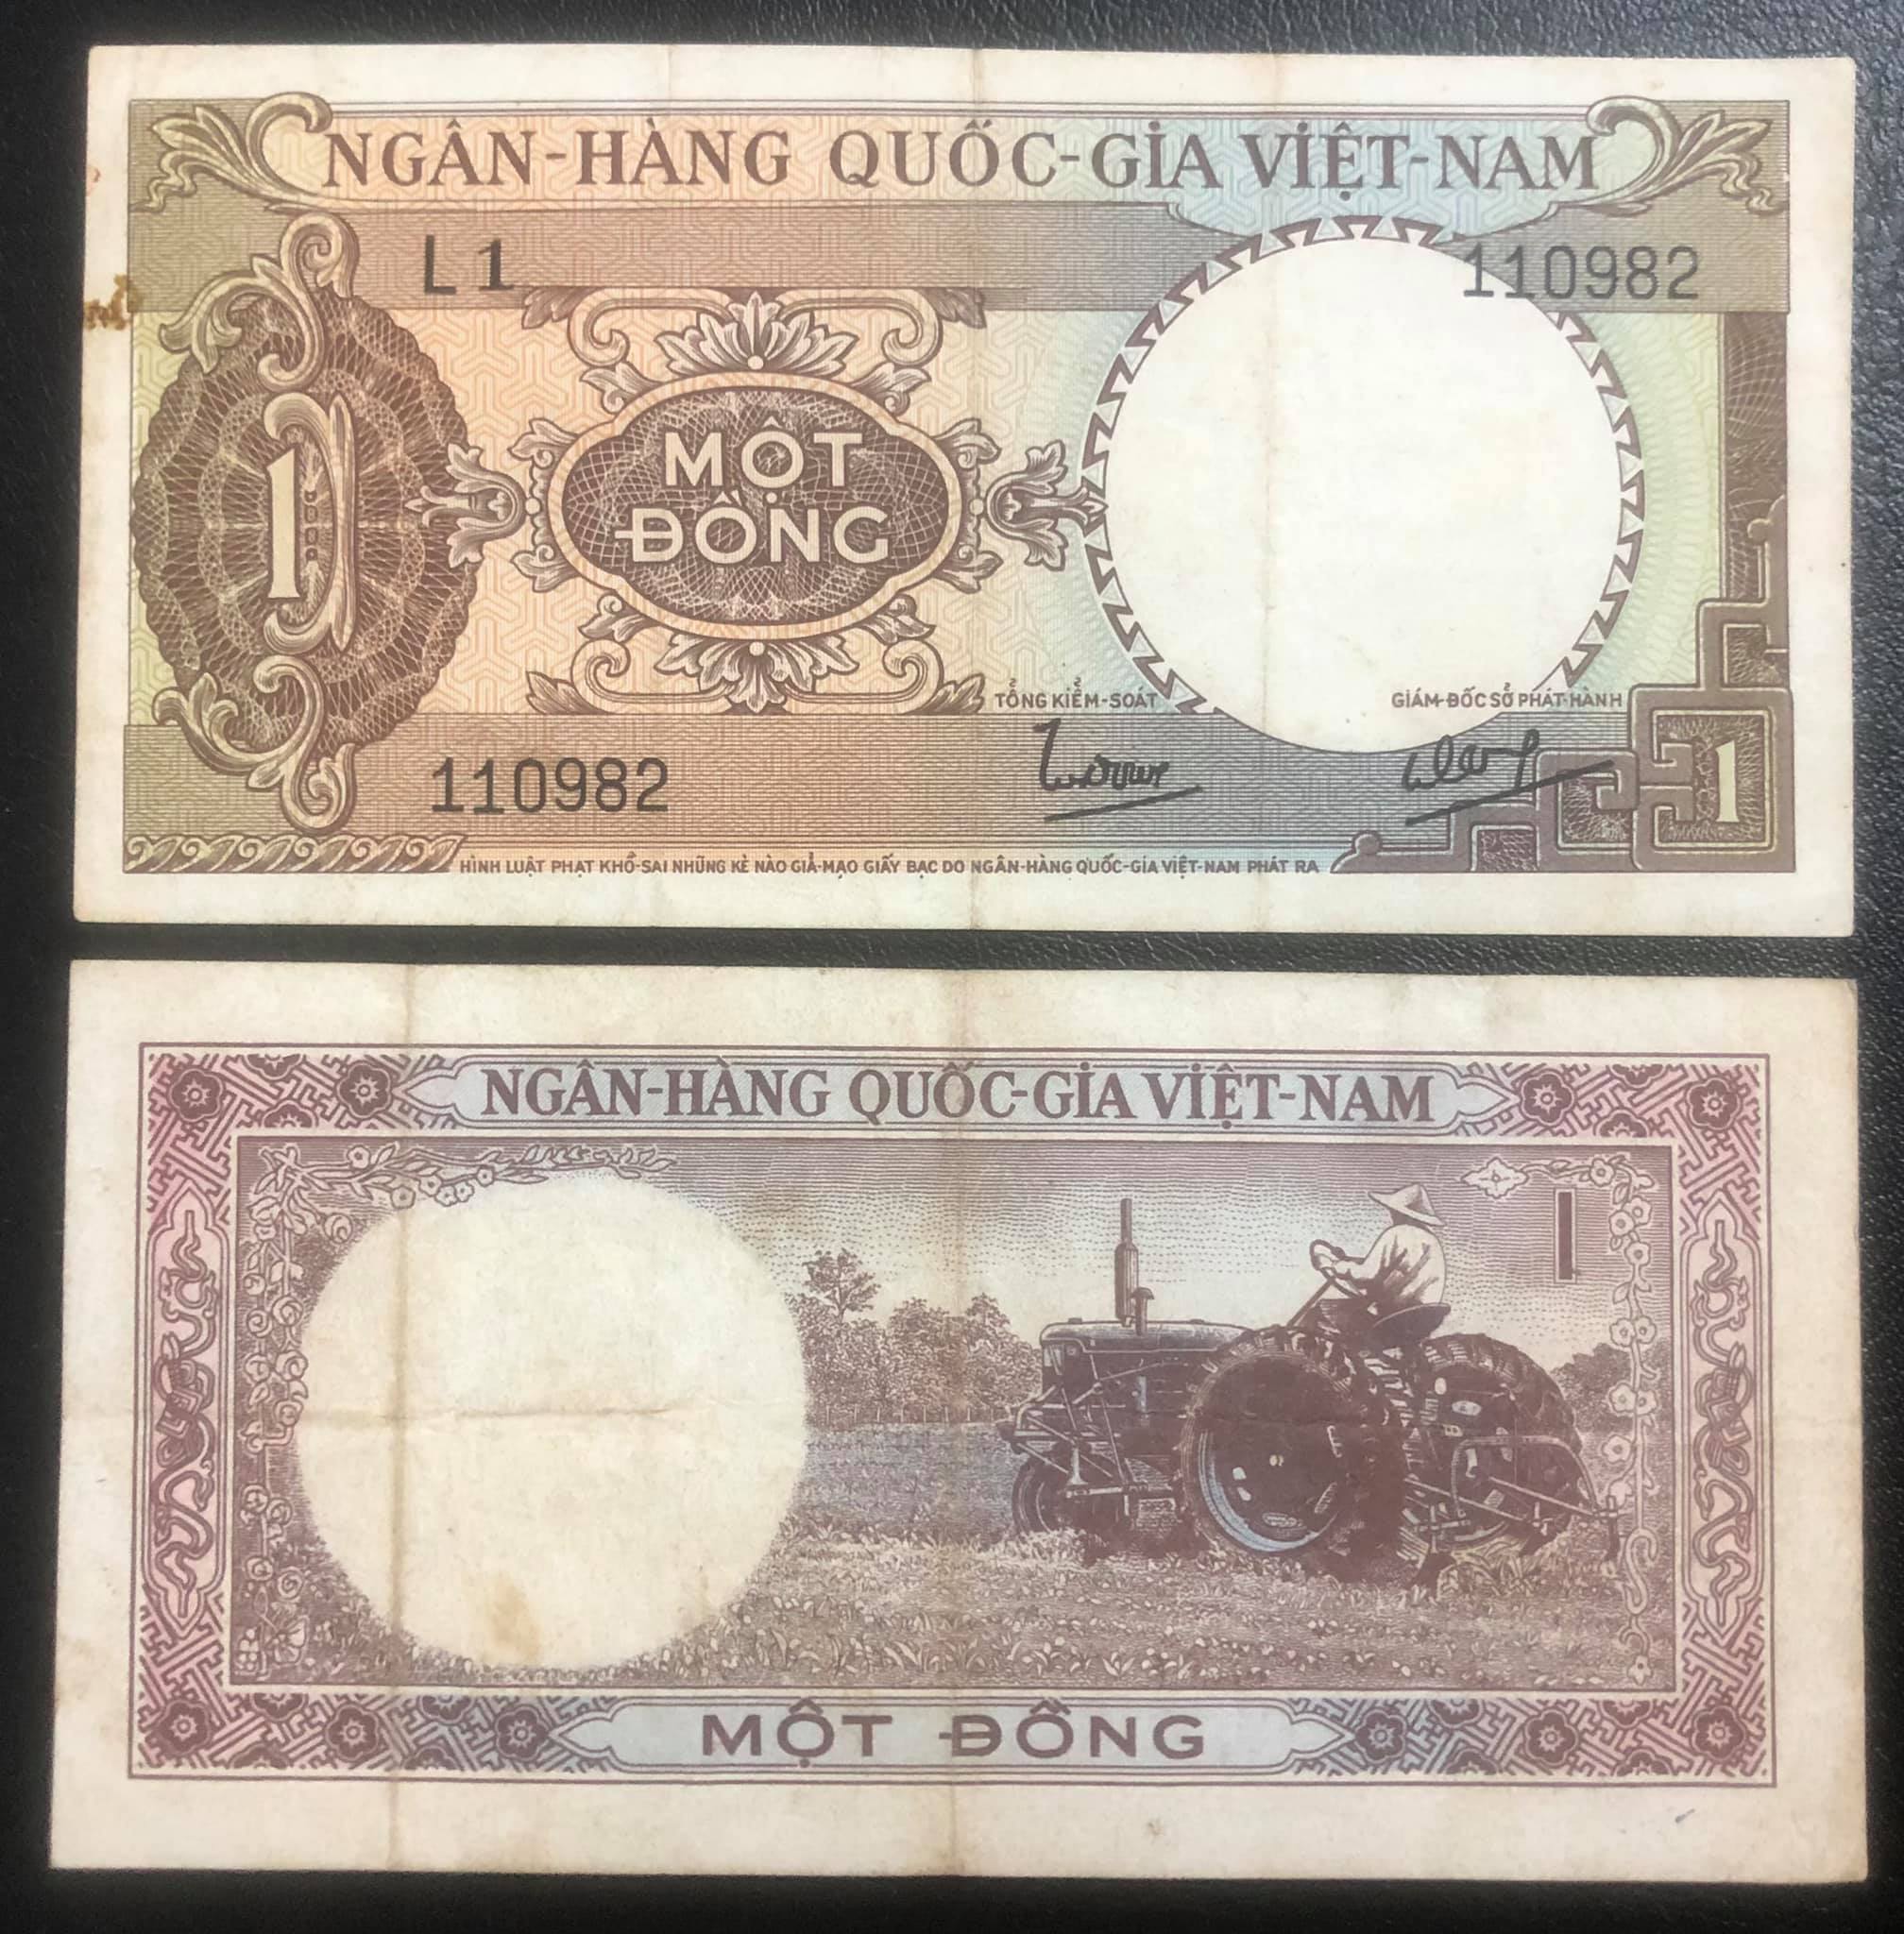 Tiền cổ Việt Nam mệnh giá 1 đồng hình mày cày ruộng, tặng kèm bao nilong bảo quản